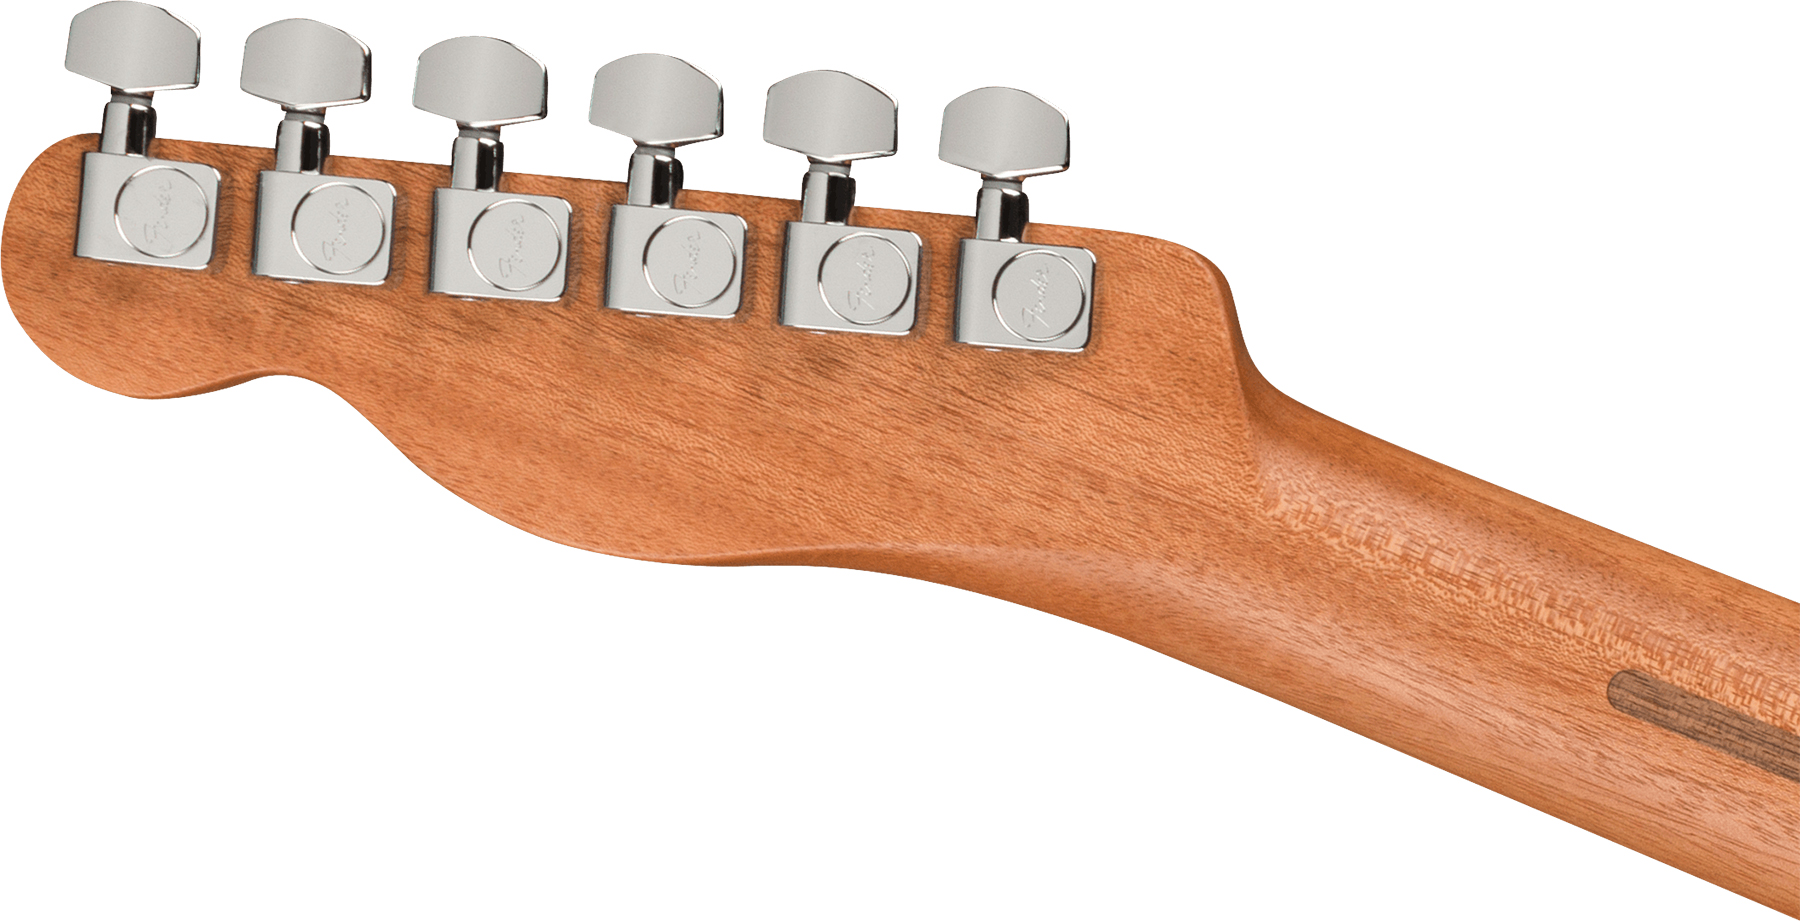 Fender Acoustasonic Tele Player Mex Epicea Acajou Rw - Butterscotch Blonde - Guitare Electro Acoustique - Variation 3